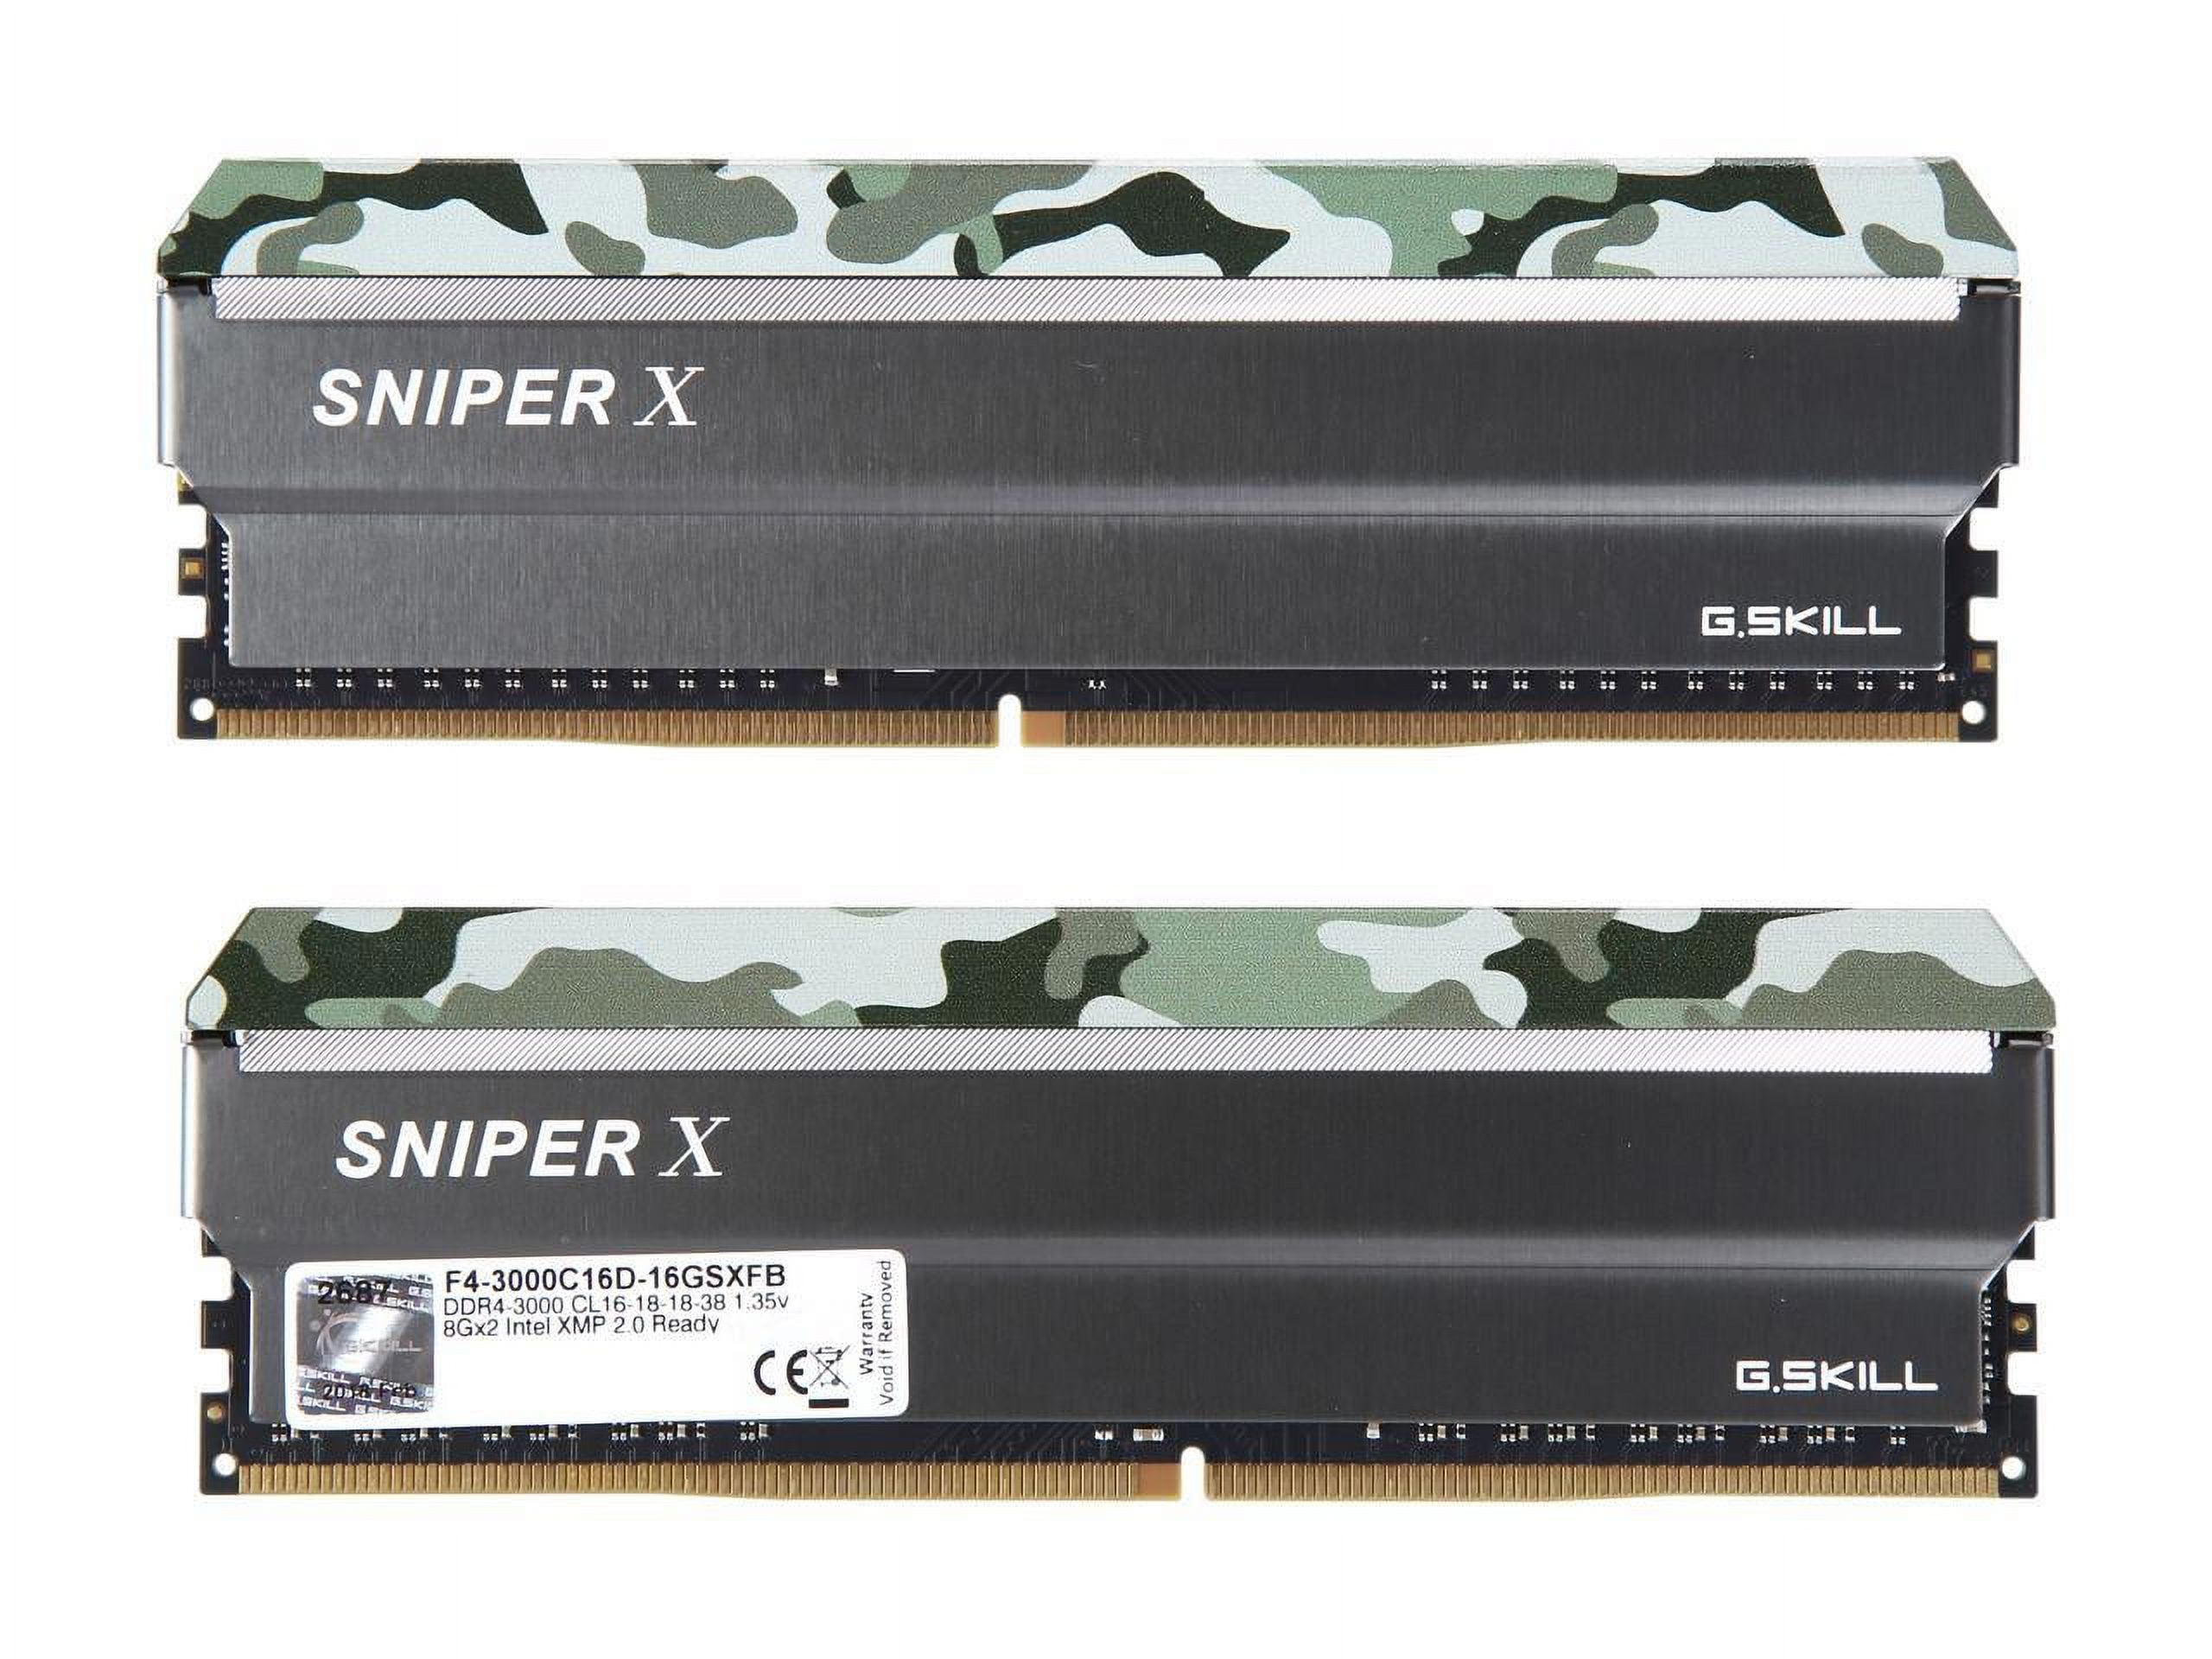 G.SKILL Sniper X Series 16GB (2 x 8GB) DDR4 3000 (PC4 24000) Desktop Memory Model F4-3000C16D-16GSXFB - image 3 of 4